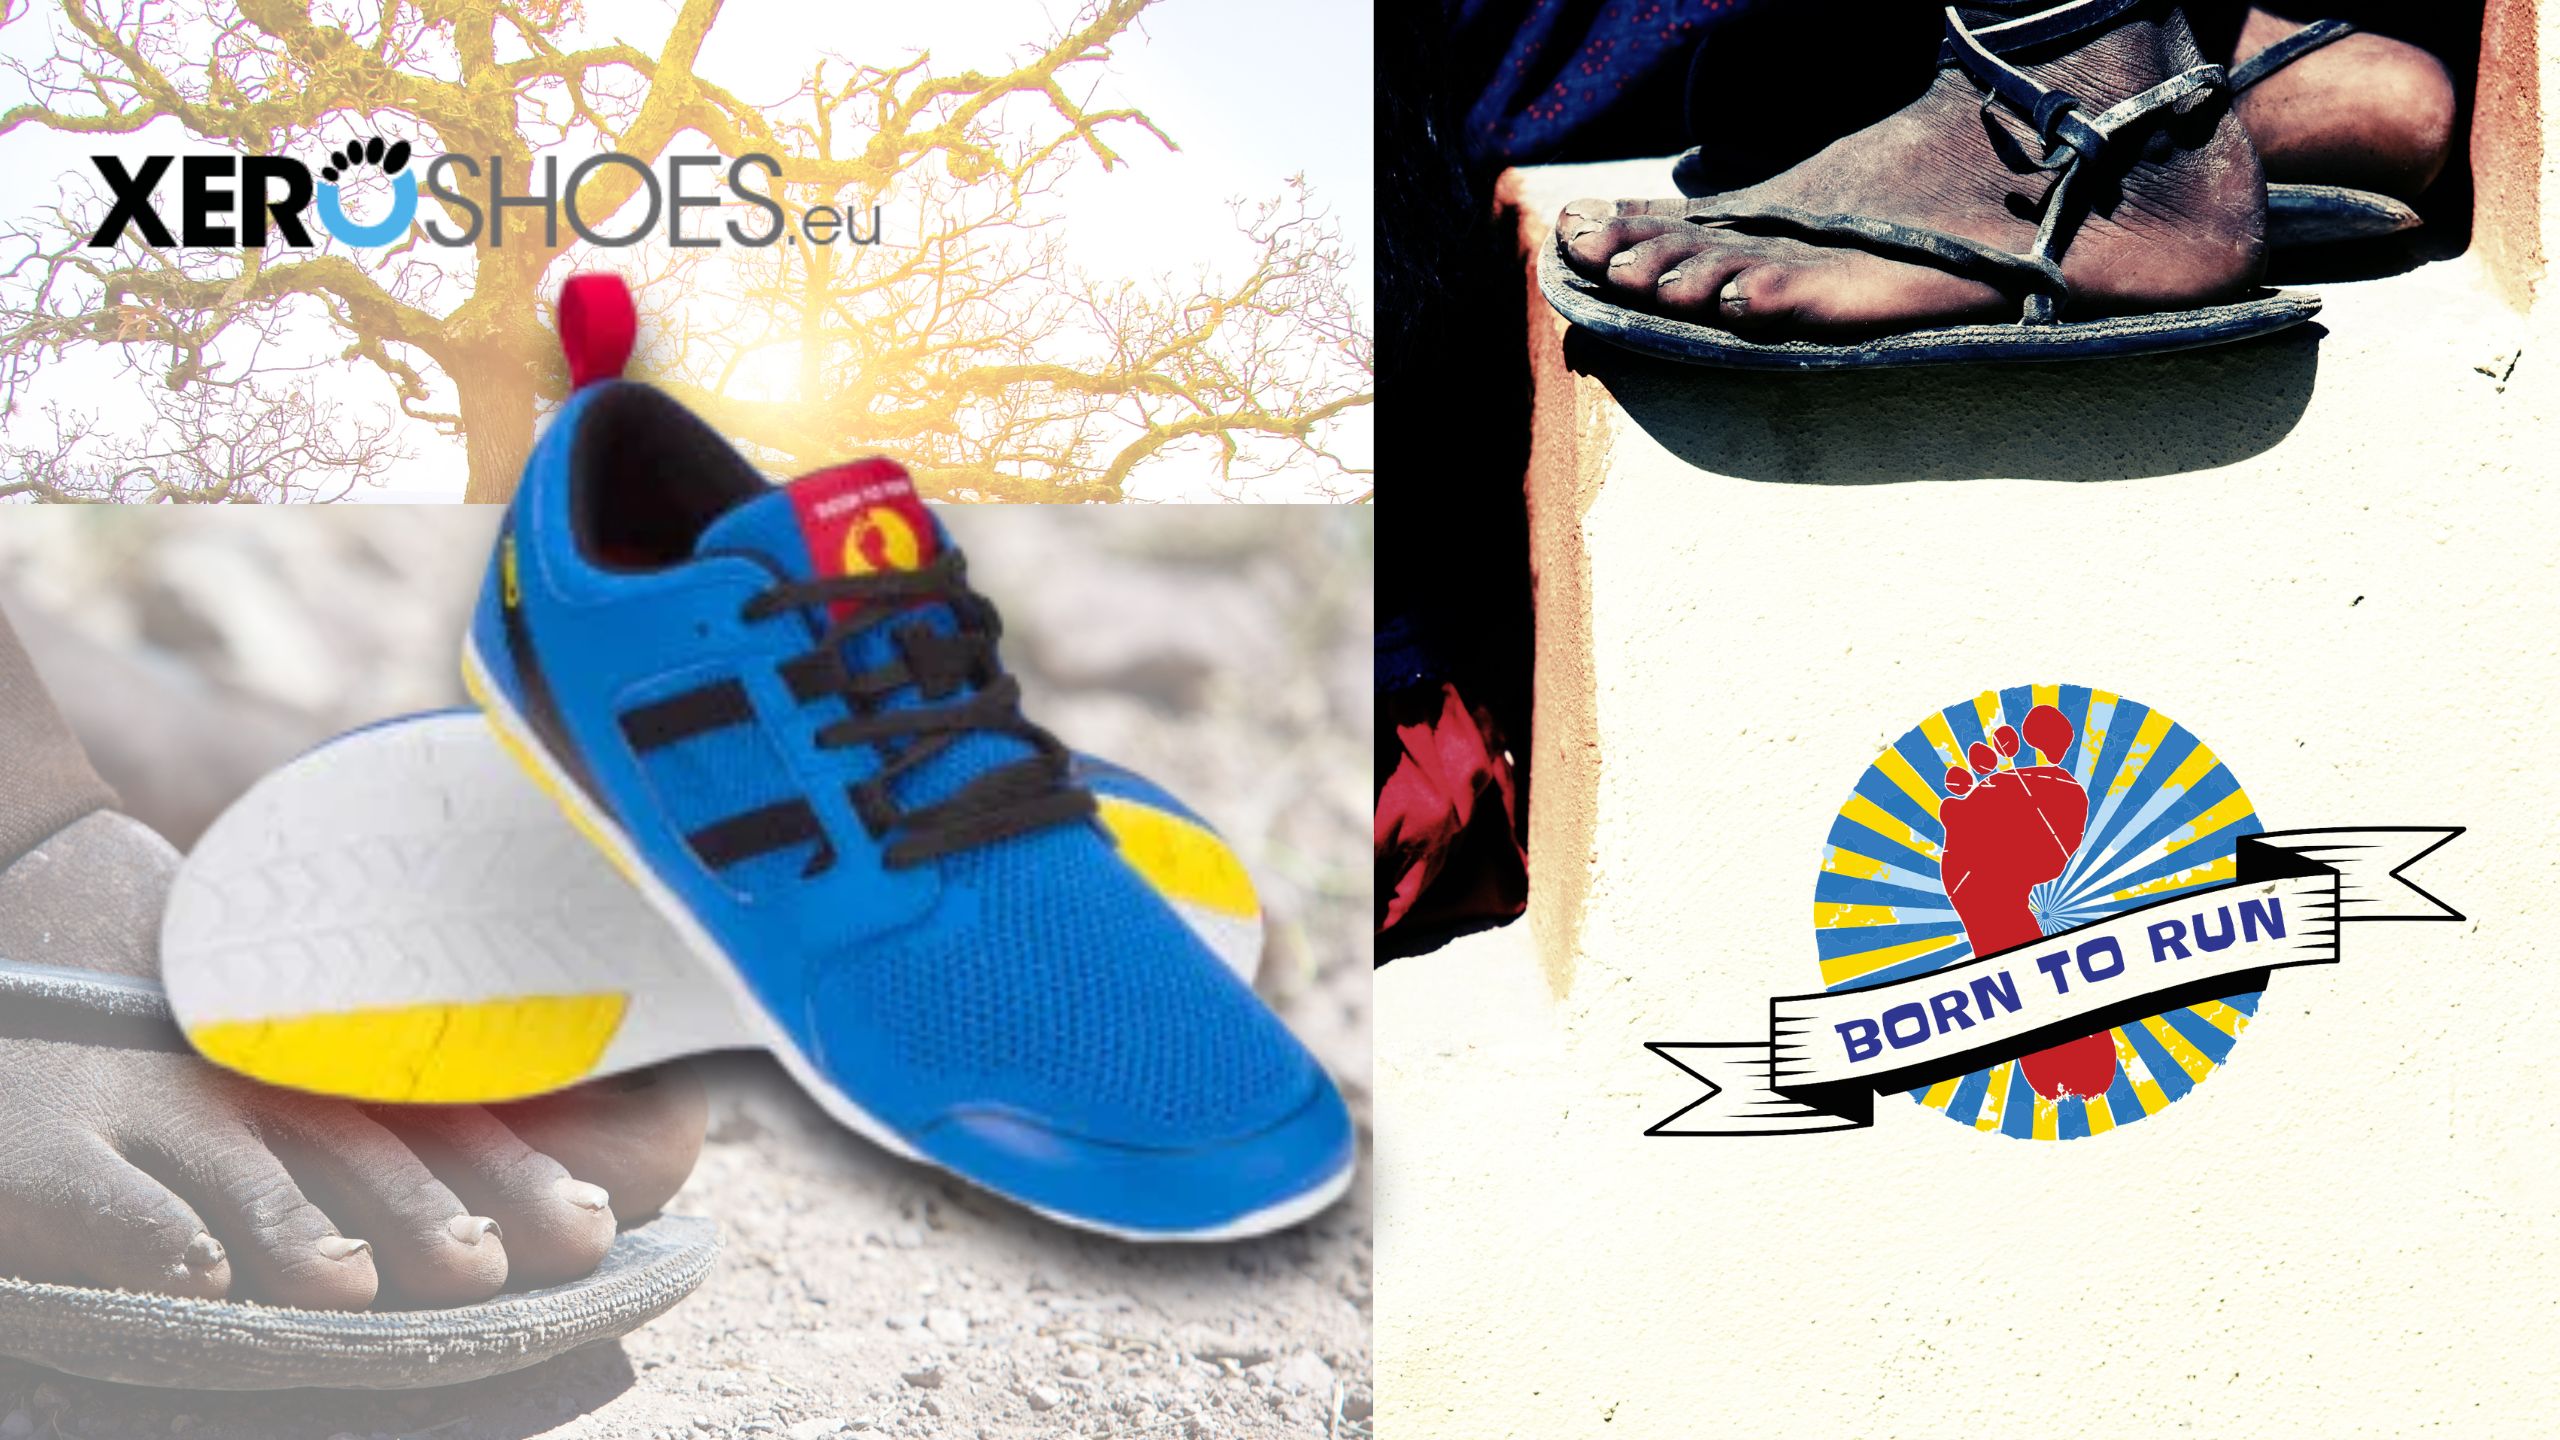 Xero Shoes, la marca que garantiza 8000 kilómetros - Corriendo Voy